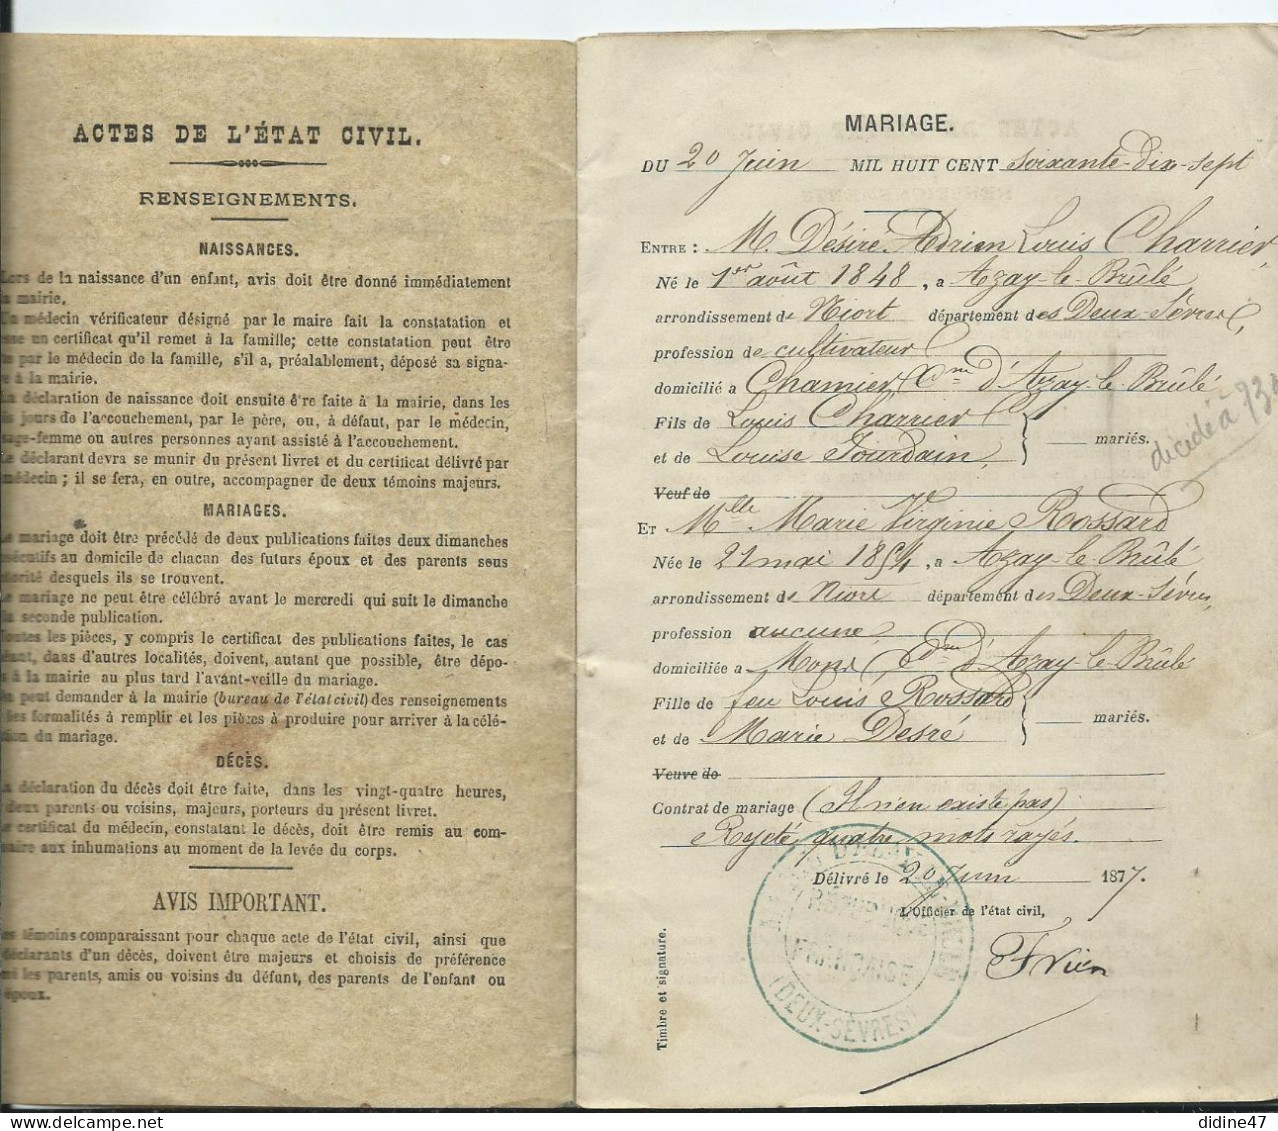 LIVRET DE FAMILLE- MARIAGE à AZAY LE BRÛLÉ Le 20 Juin 1877 - Historical Documents